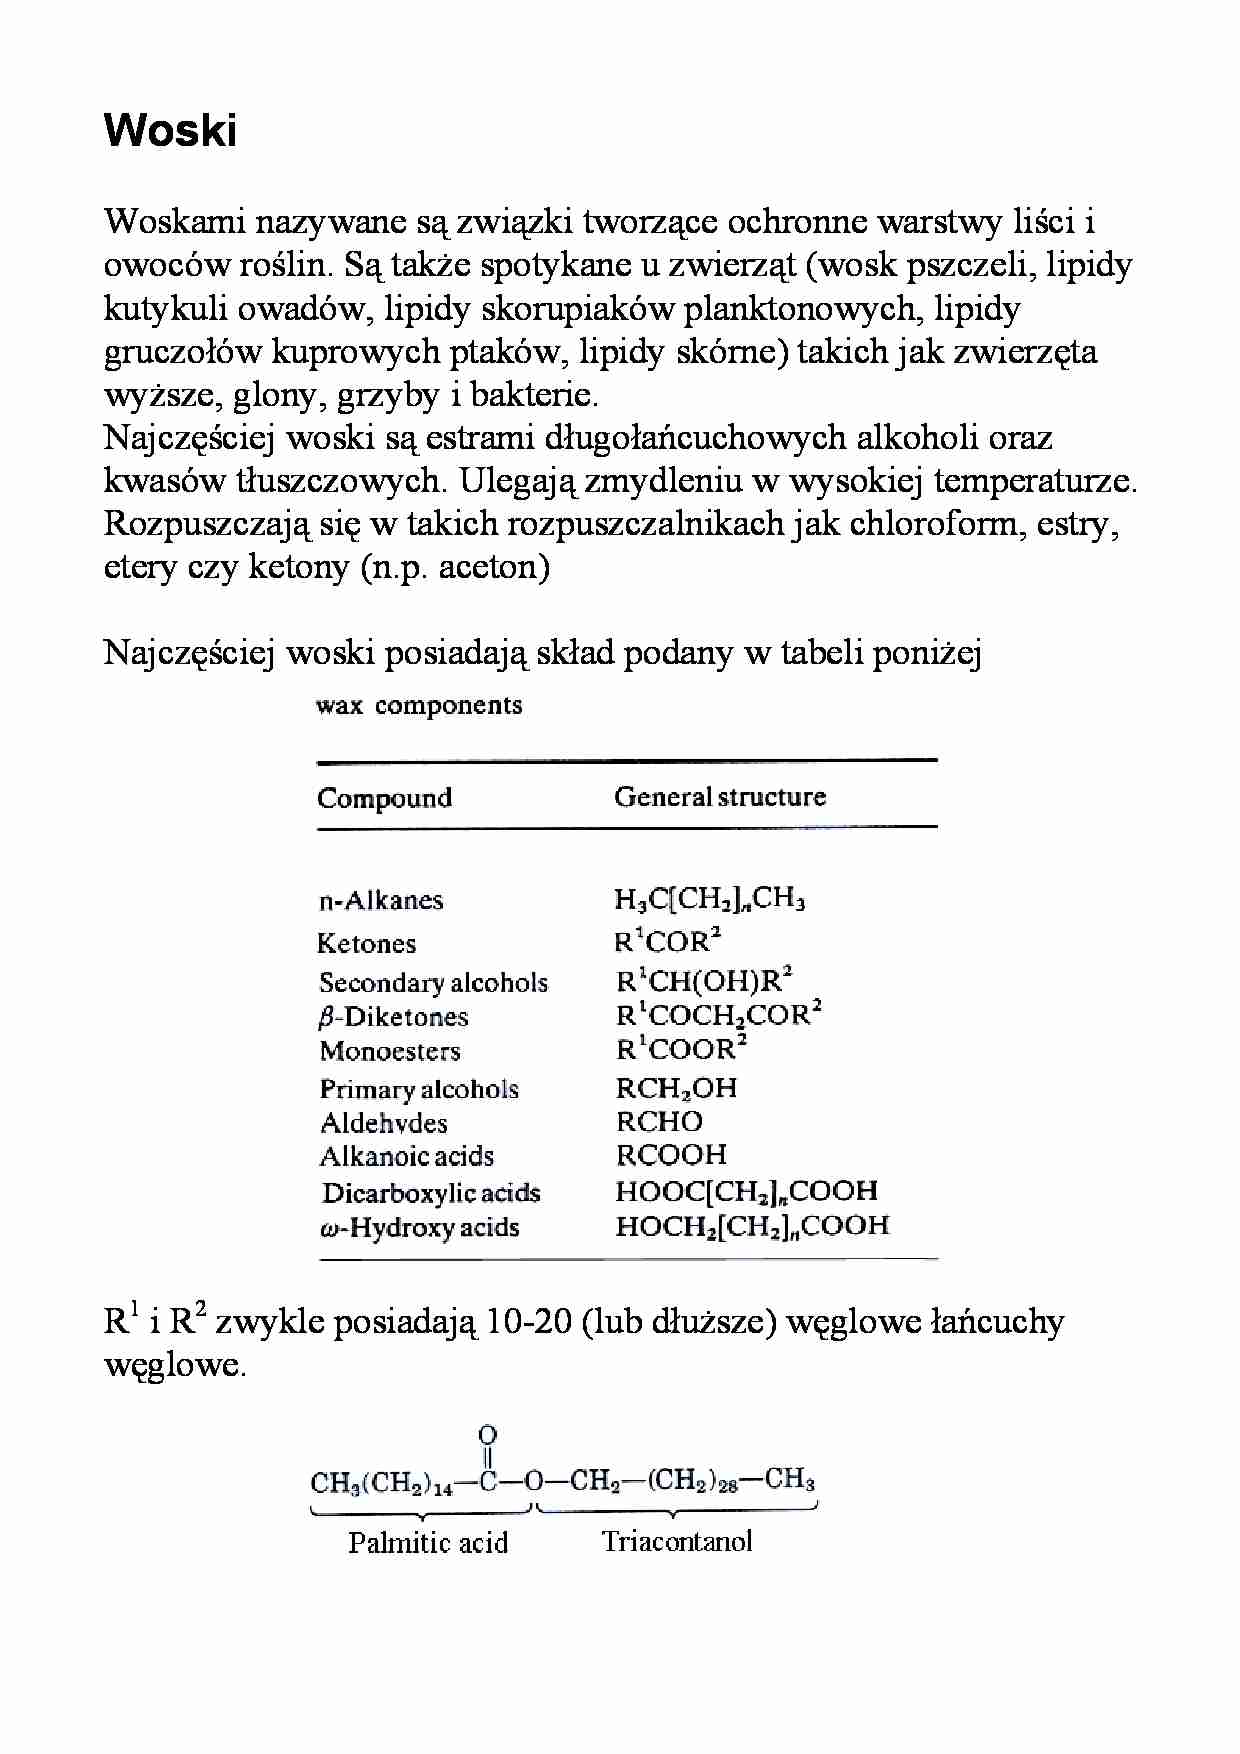 Lipidy - woski - strona 1